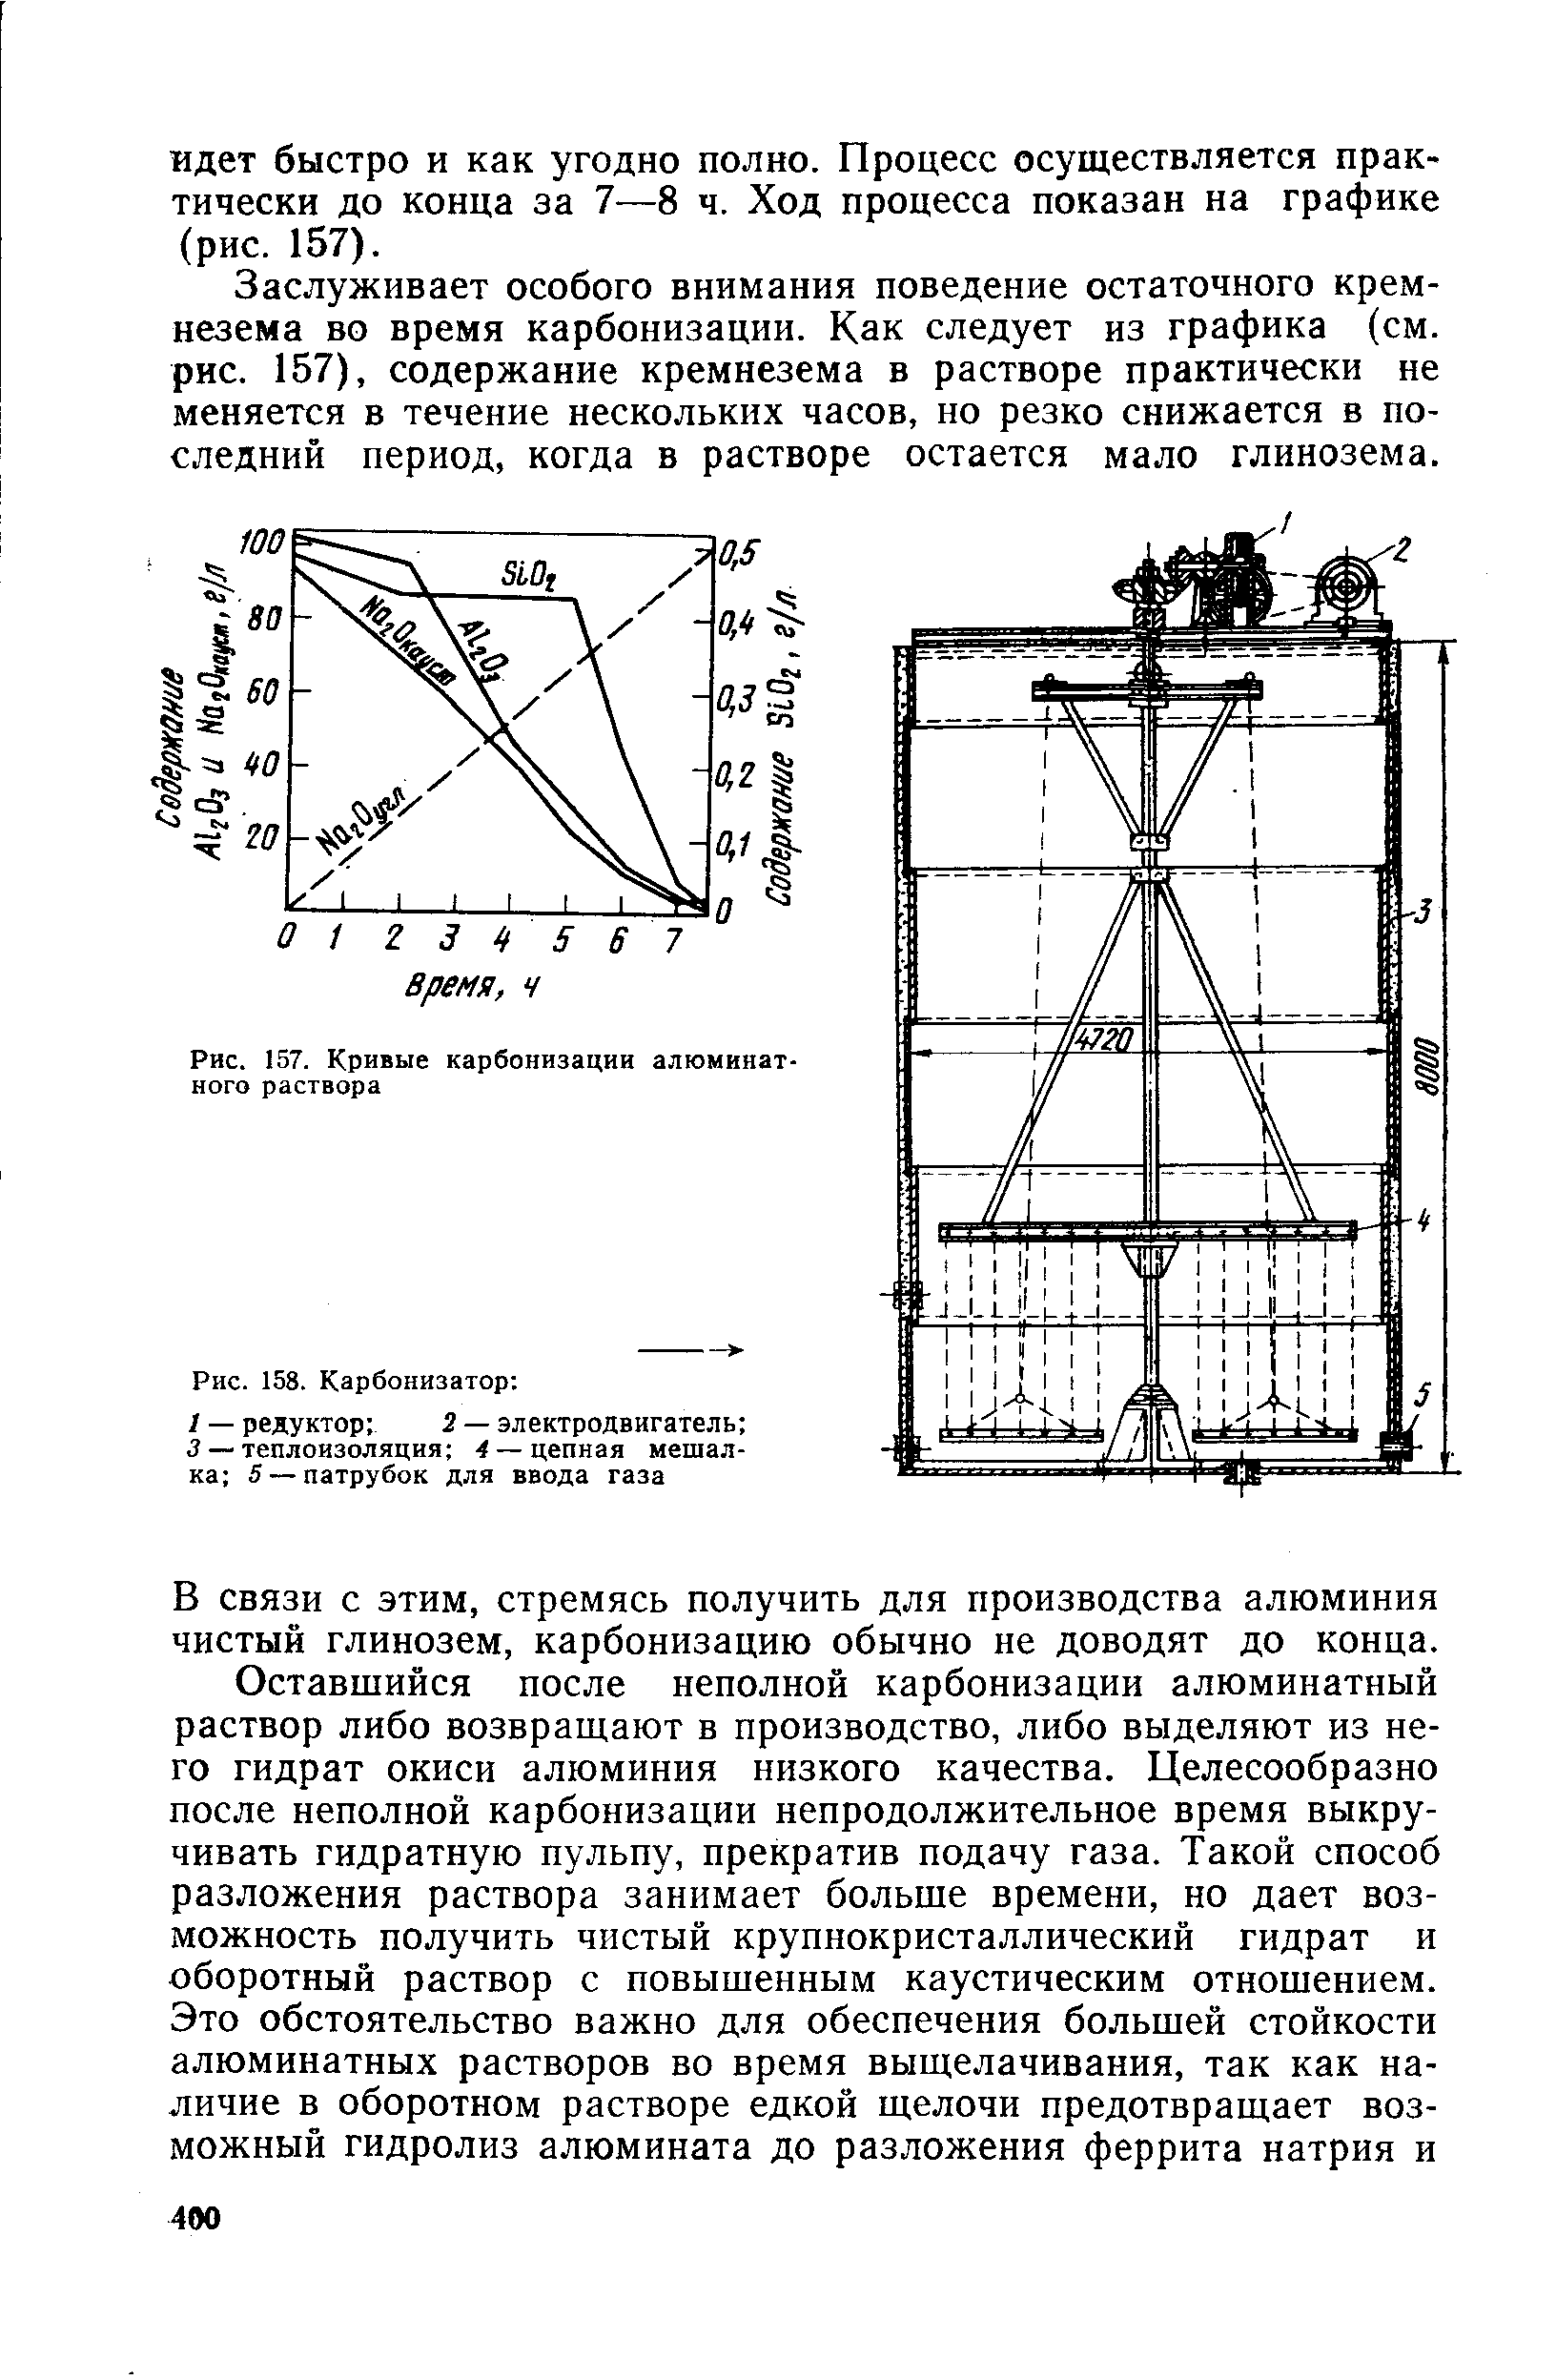 Рис. 157. Кривые карбонизации алюминатного раствора
